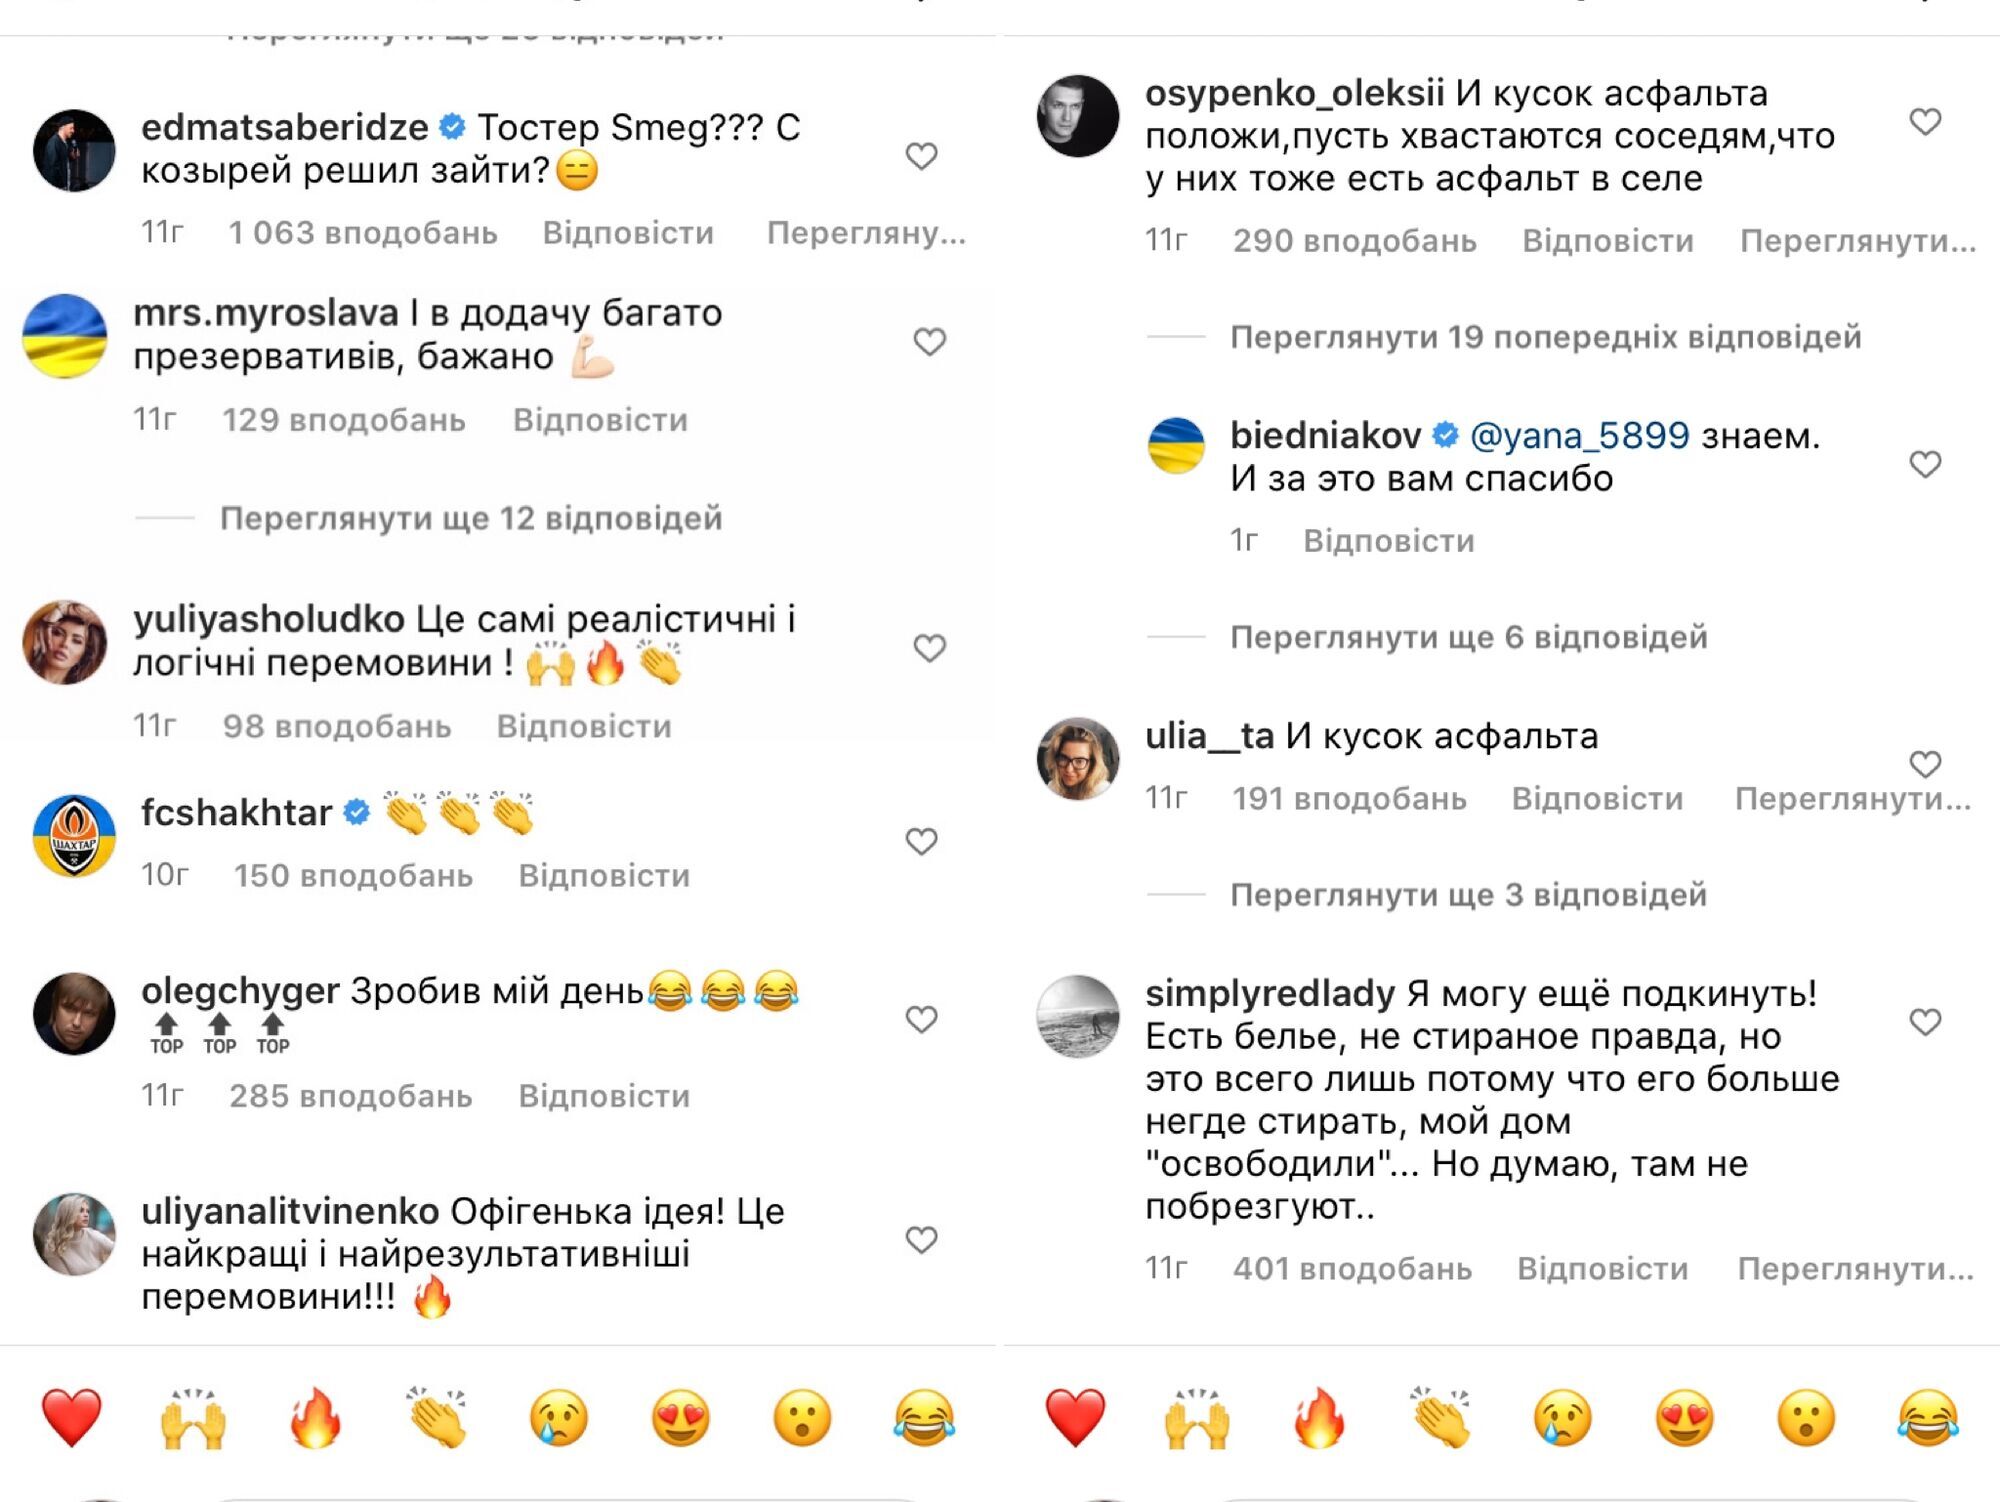 Коментарі під відео Бєднякова